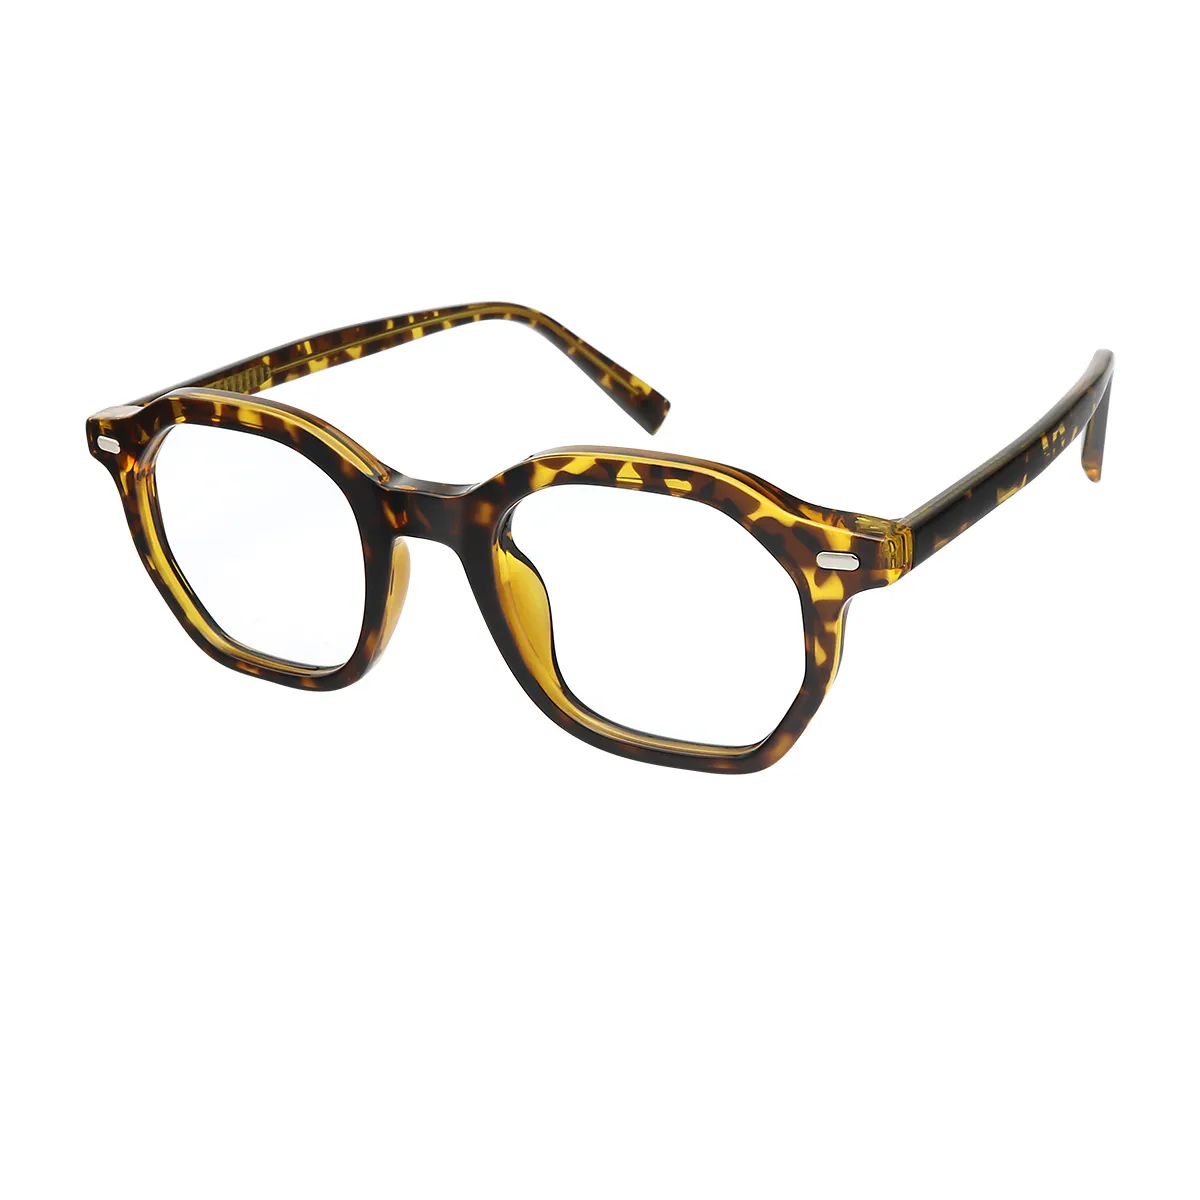 Finn - Geometric Tortoiseshell Glasses for Men & Women - EFE